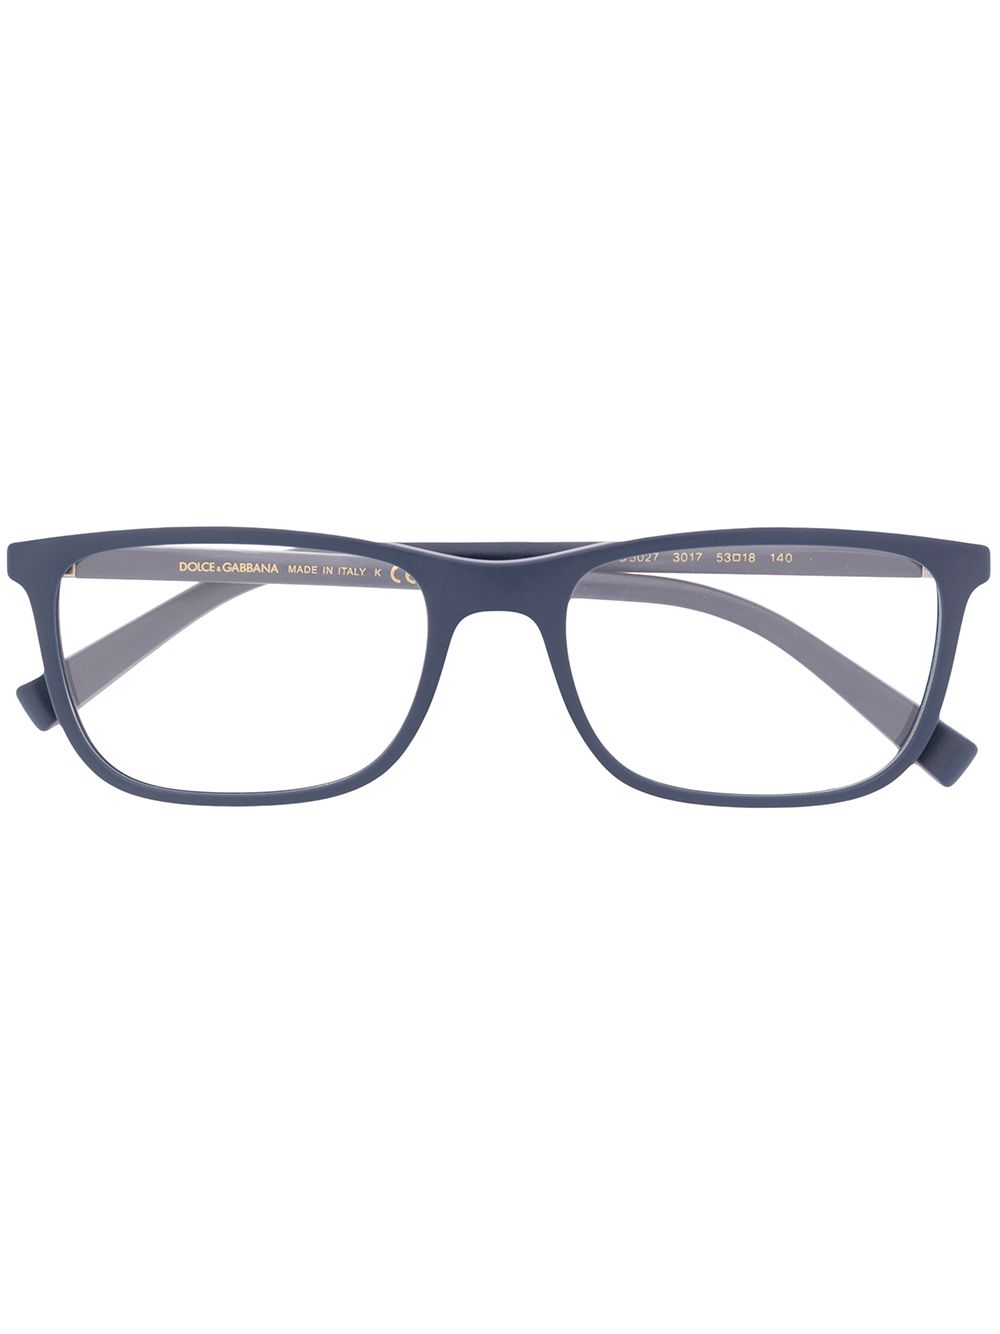 фото Dolce & gabbana eyewear очки в прямоугольной оправе